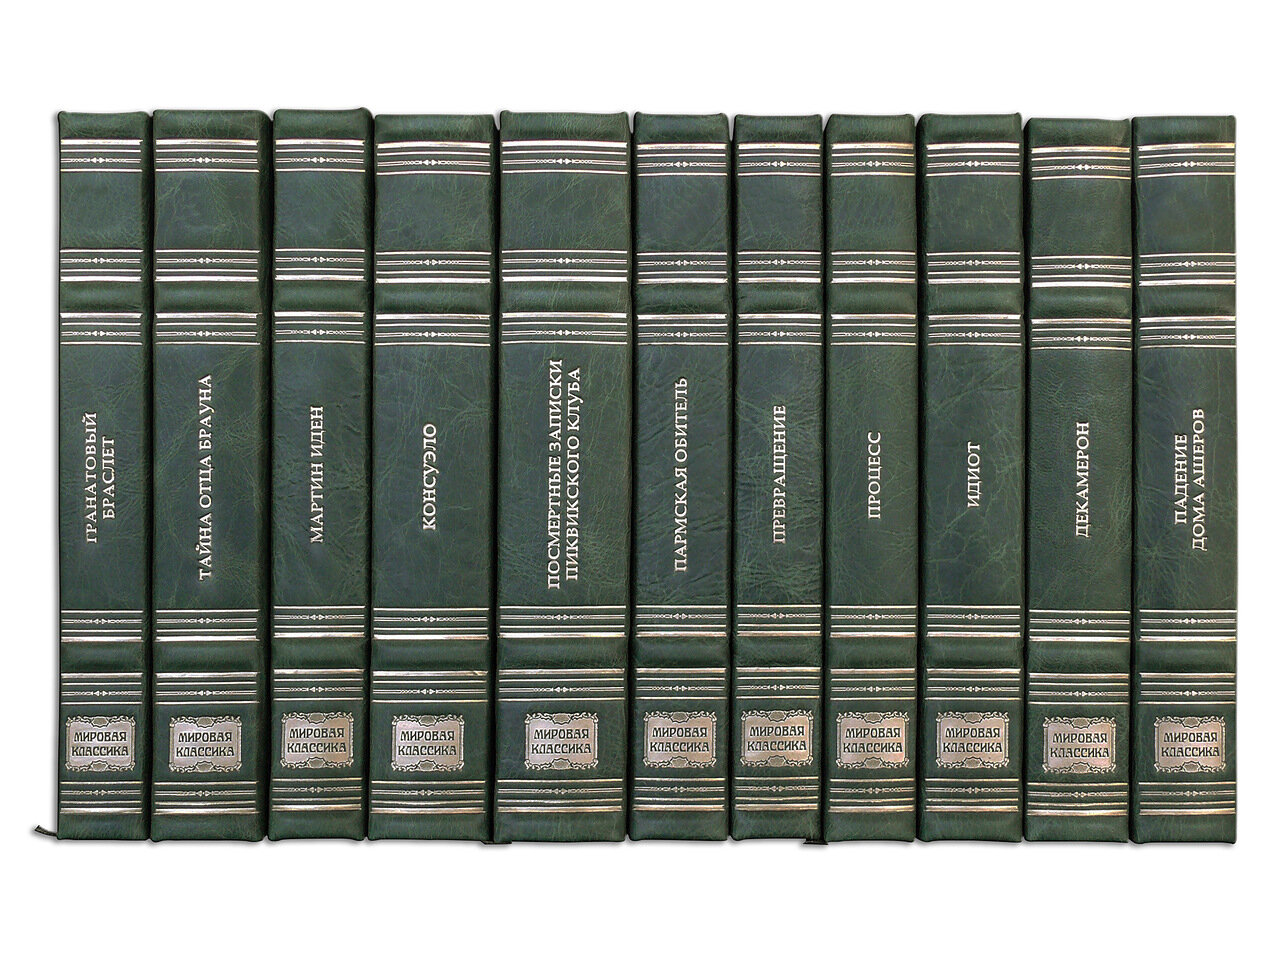 Подарочная библиотека «Мировая классика» в 100 томах